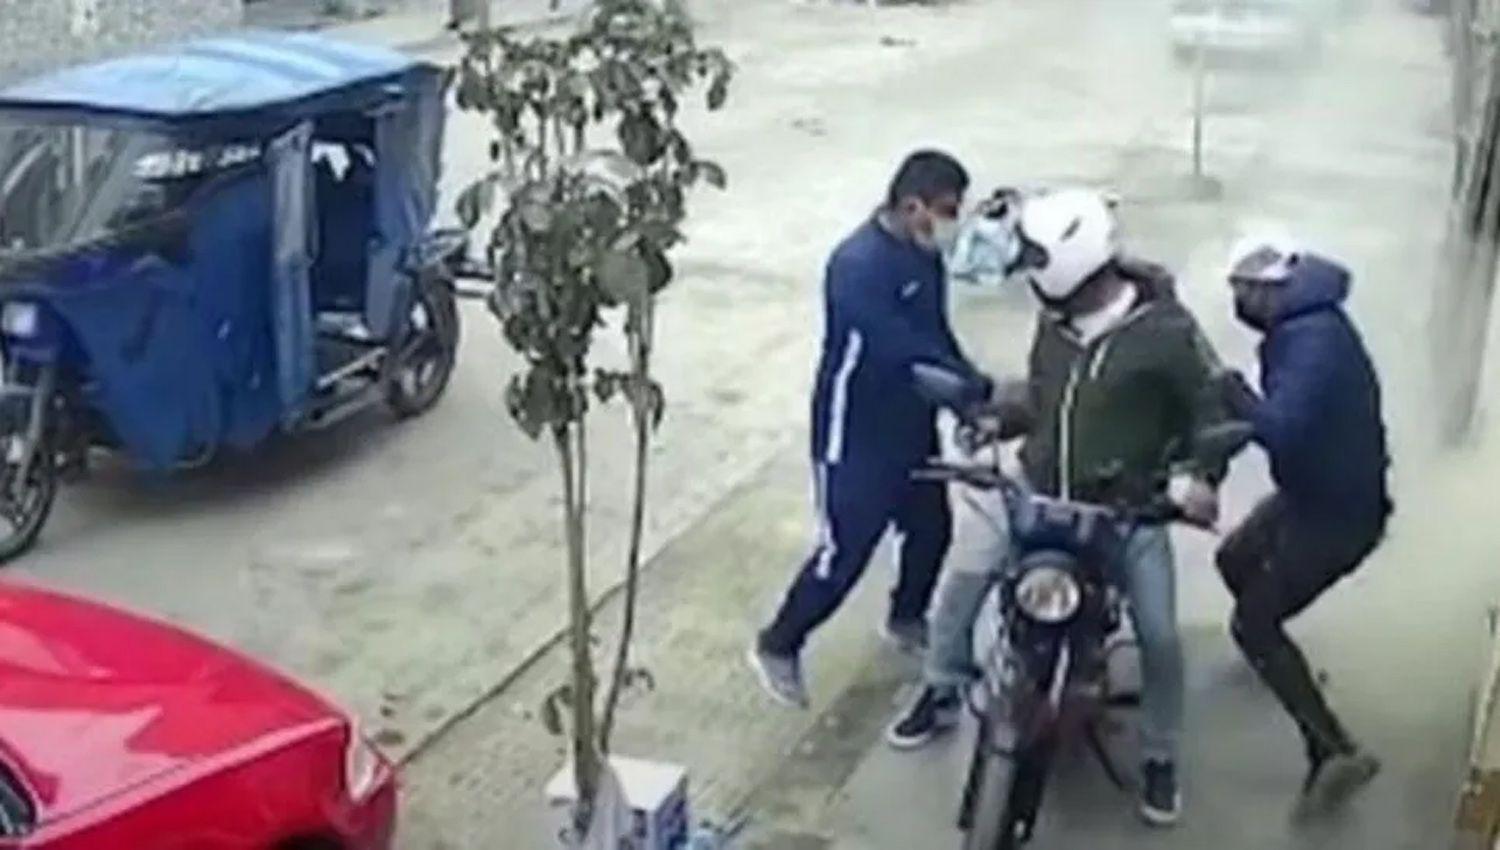 VIDEO  albantildeil evitoacute un robo arrojando una bolsa de cemento sobre los ladrones